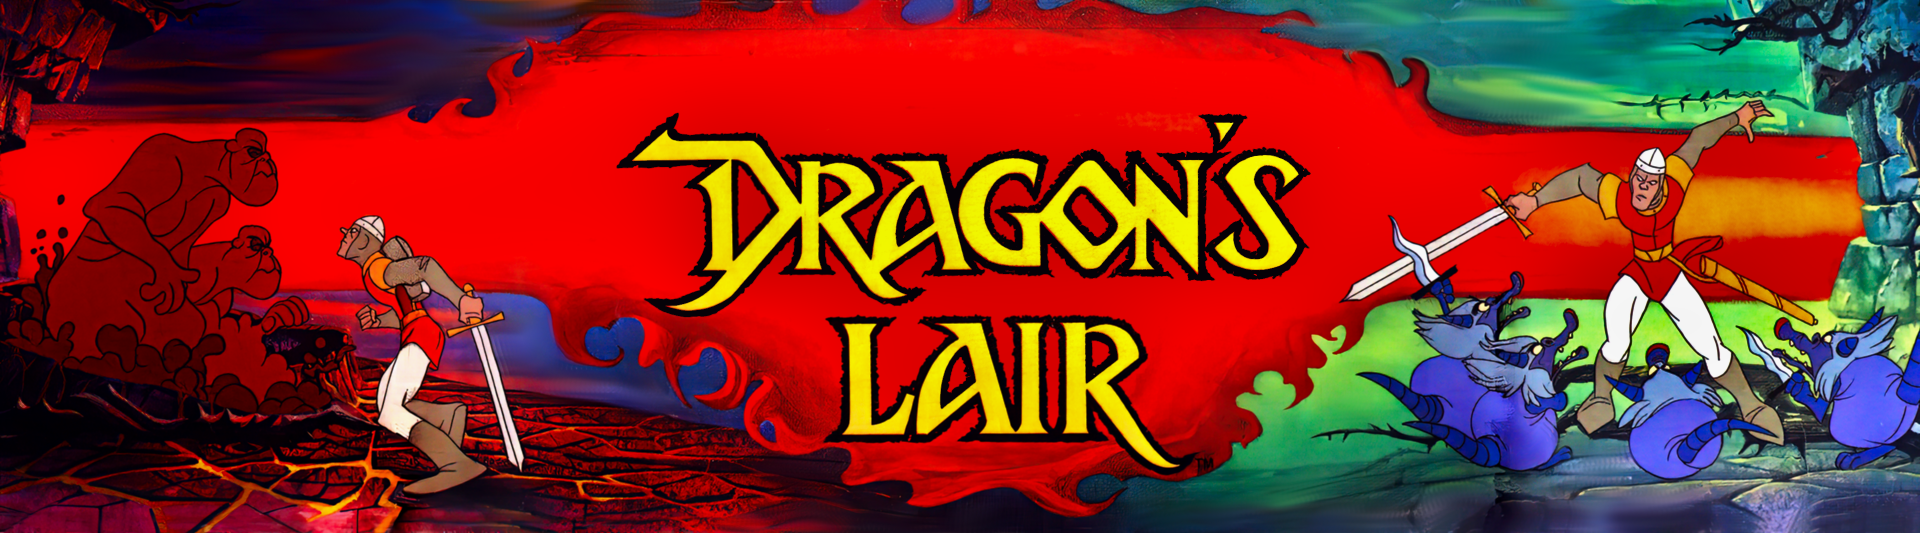 DragonsLair Marquee Enhanced